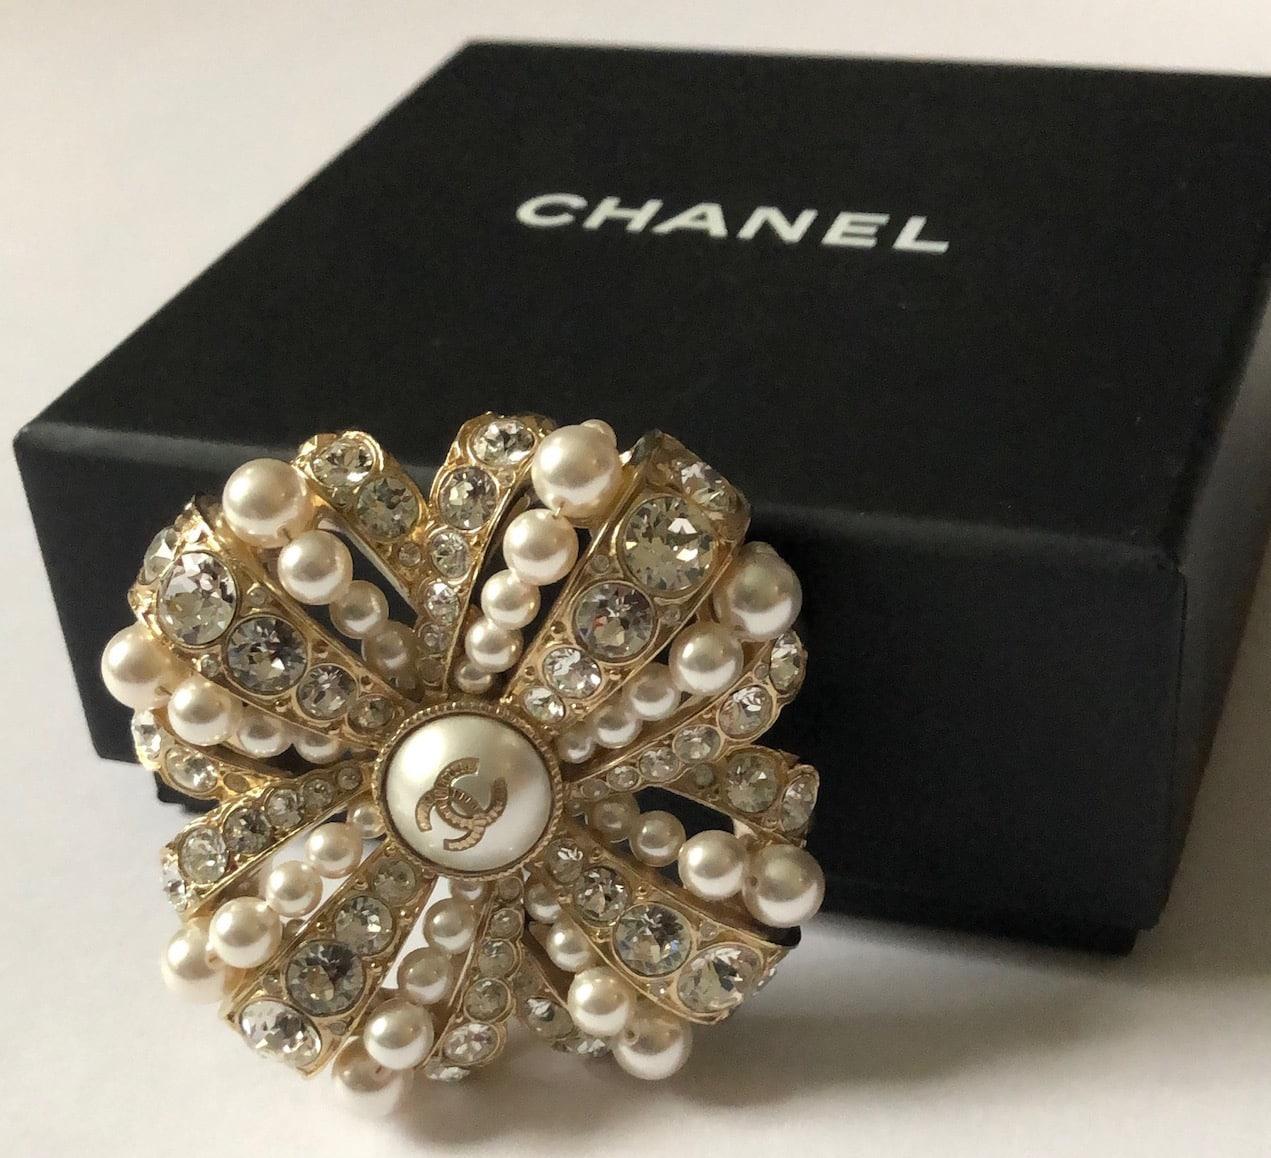 CHANEL Brosche CC Logo Perle & Kristalle Pin W/Box
Eine atemberaubende Chanel Brosche Herbst 2020 Kollektion, in Gold Metall mit Kristallen und cremefarbenen faux Perlen veredelt. Diese Brosche ist von einer militärischen Medaille inspiriert. Es ist